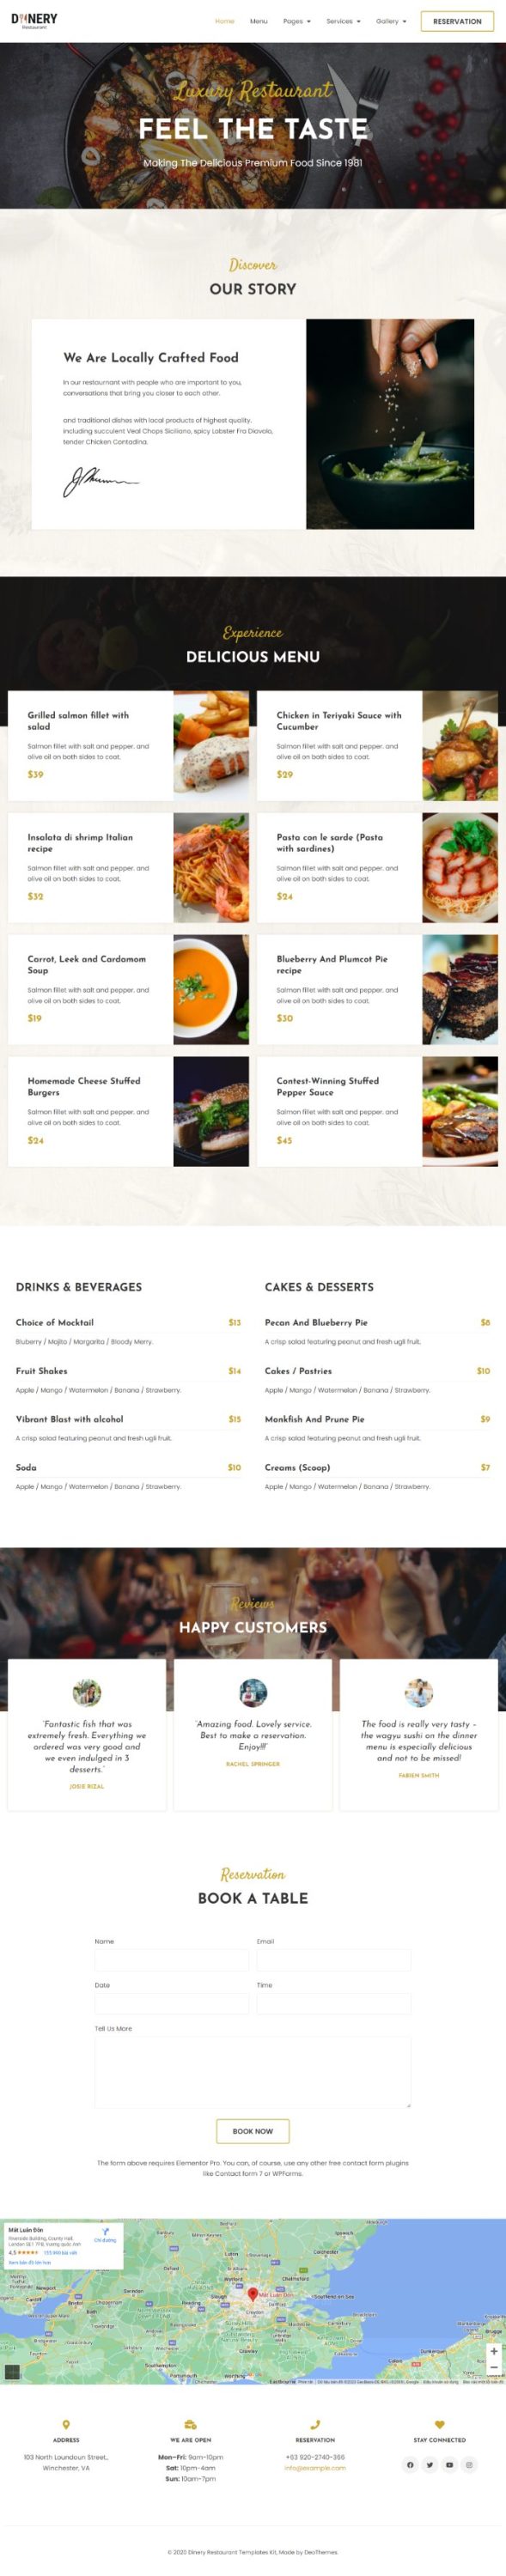 Mẫu website dịch vụ nhà hàng - Dinery